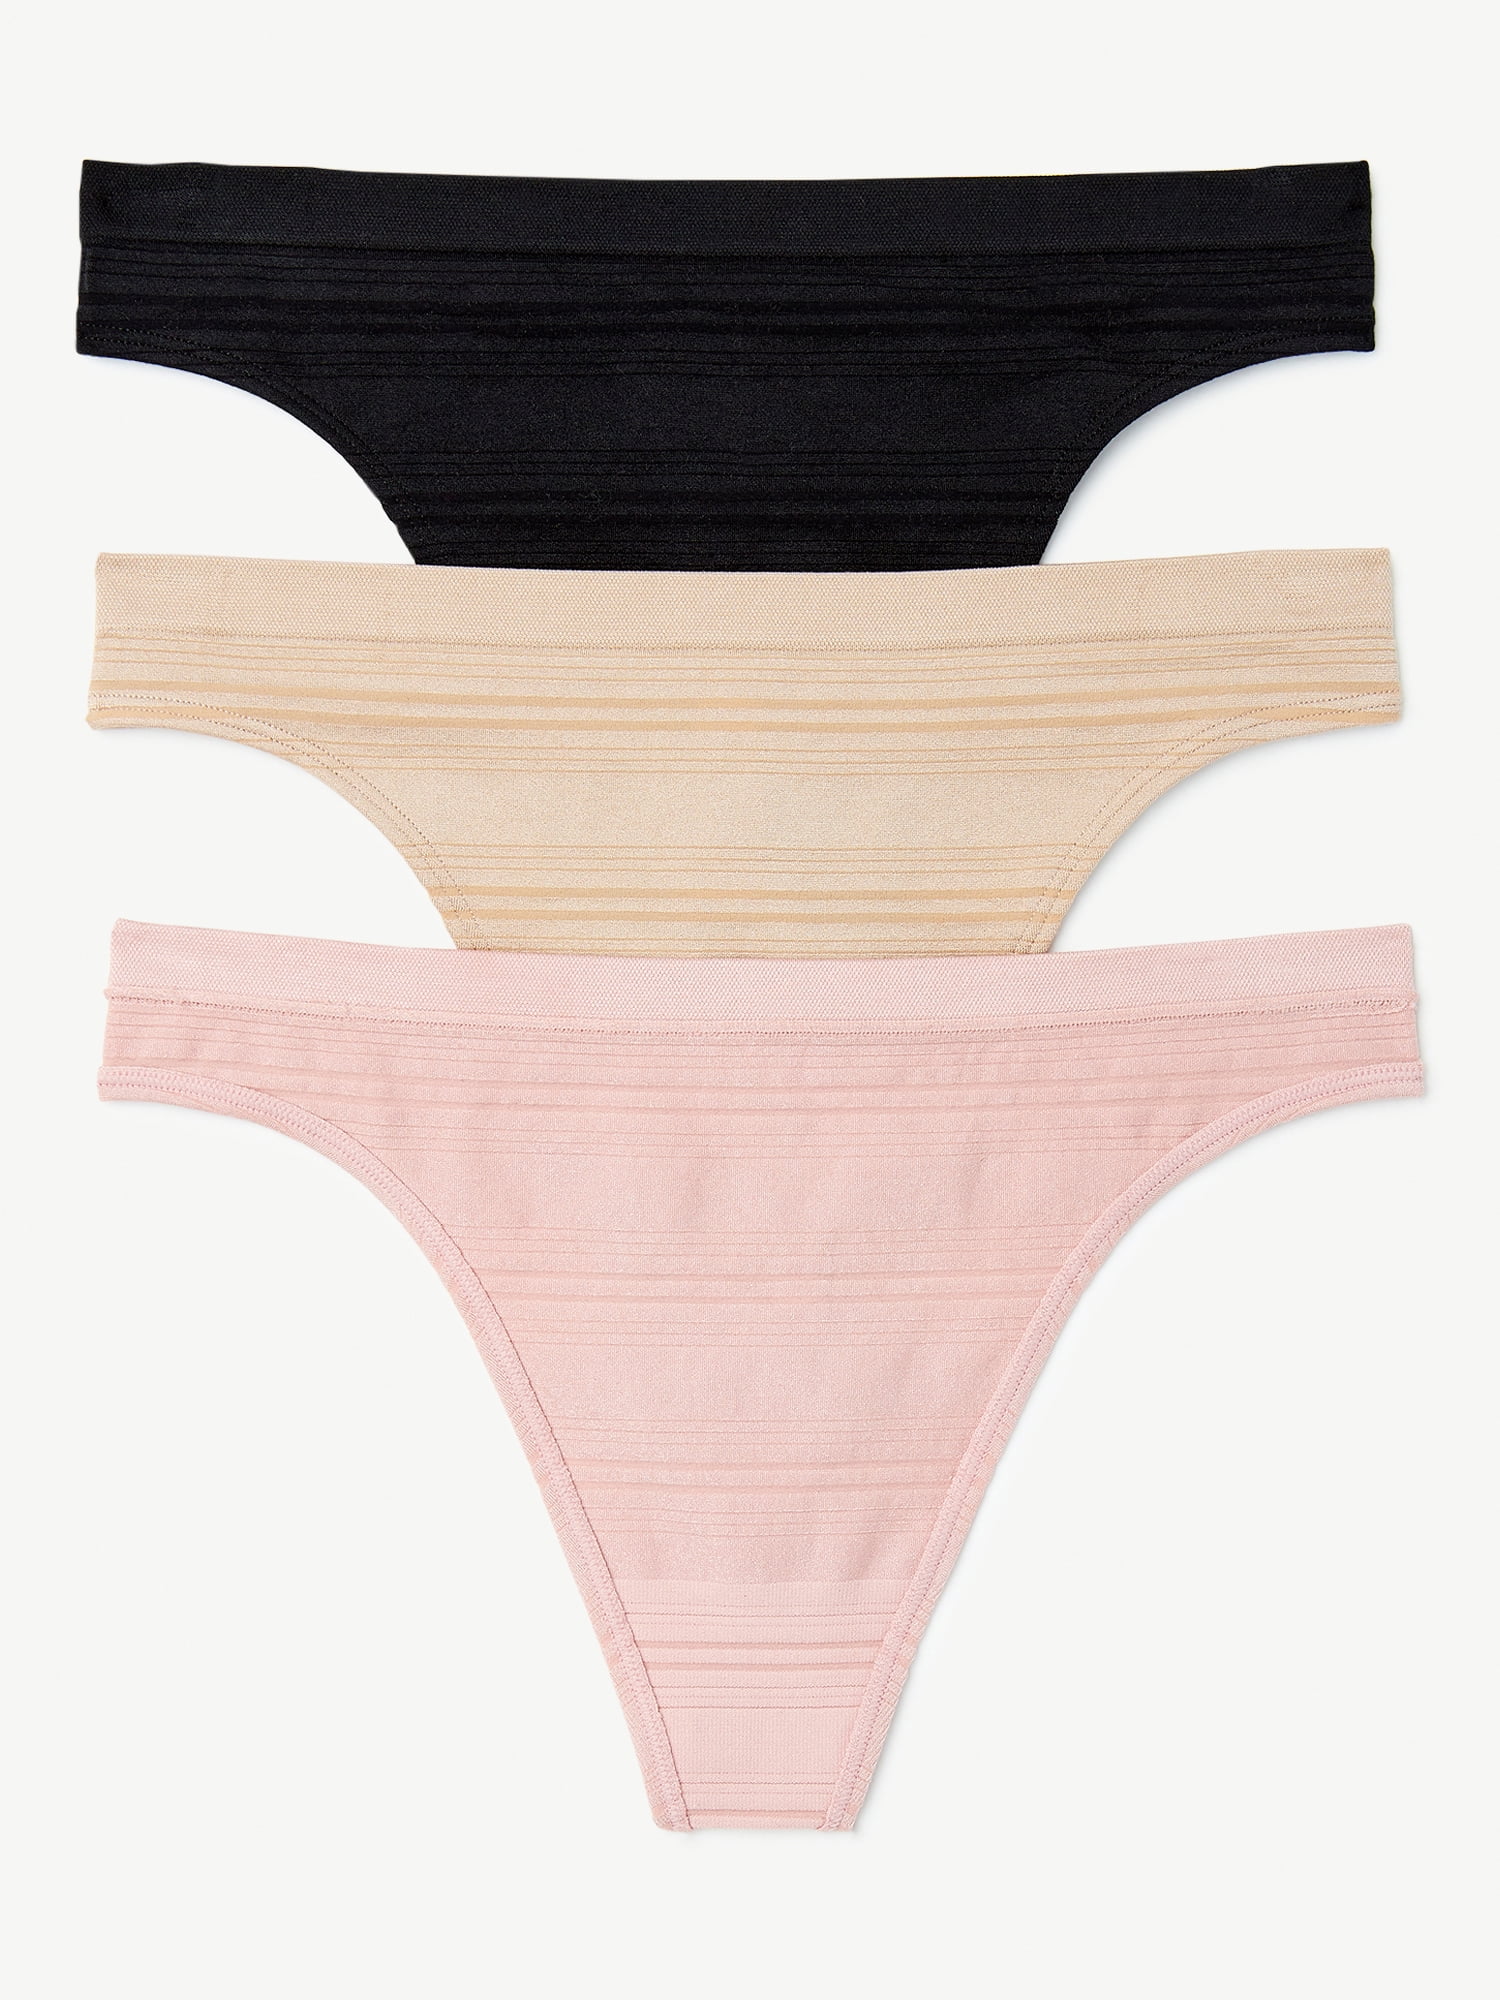 Joyspun Women's Seamless Sheer Stripe Thong Panties, 3-Pack, Sizes to 3XL